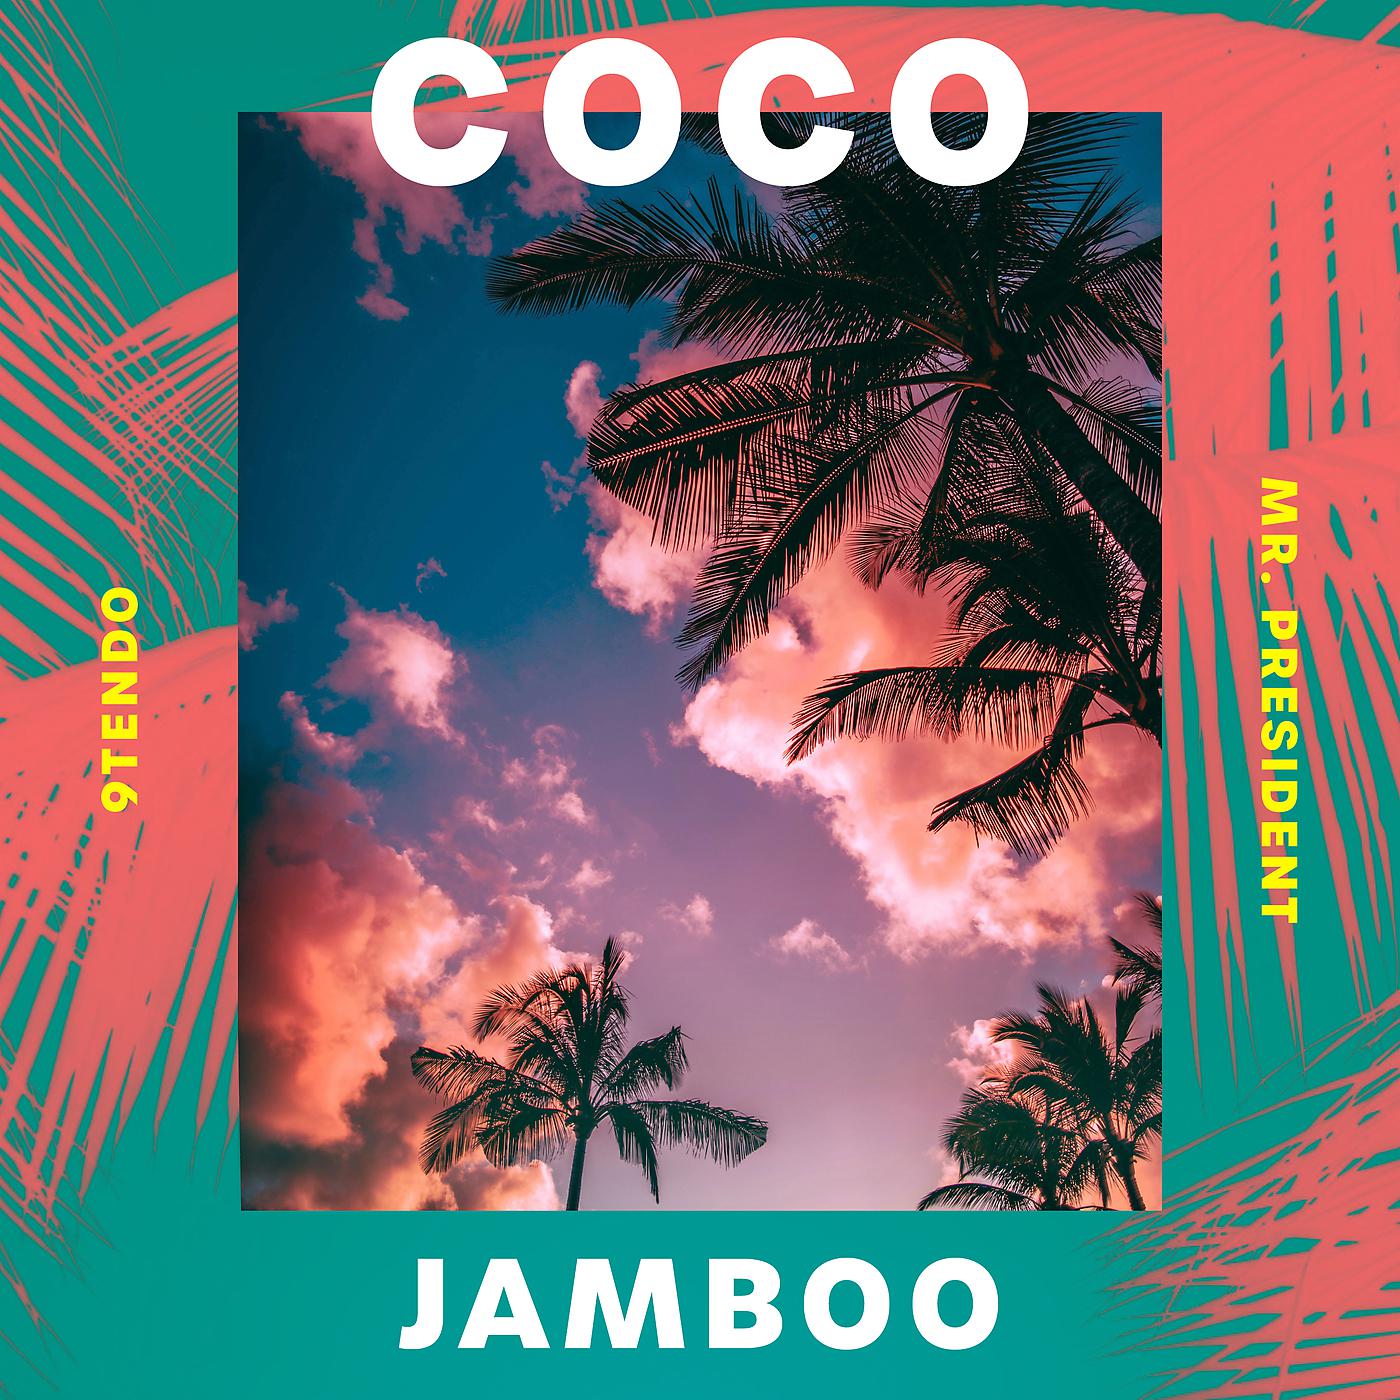 Mr President Coco. Mr President Coco Jambo. 9tendo, Mr. President - Coco Jamboo. Coco Jamboo Mr. President сингл.